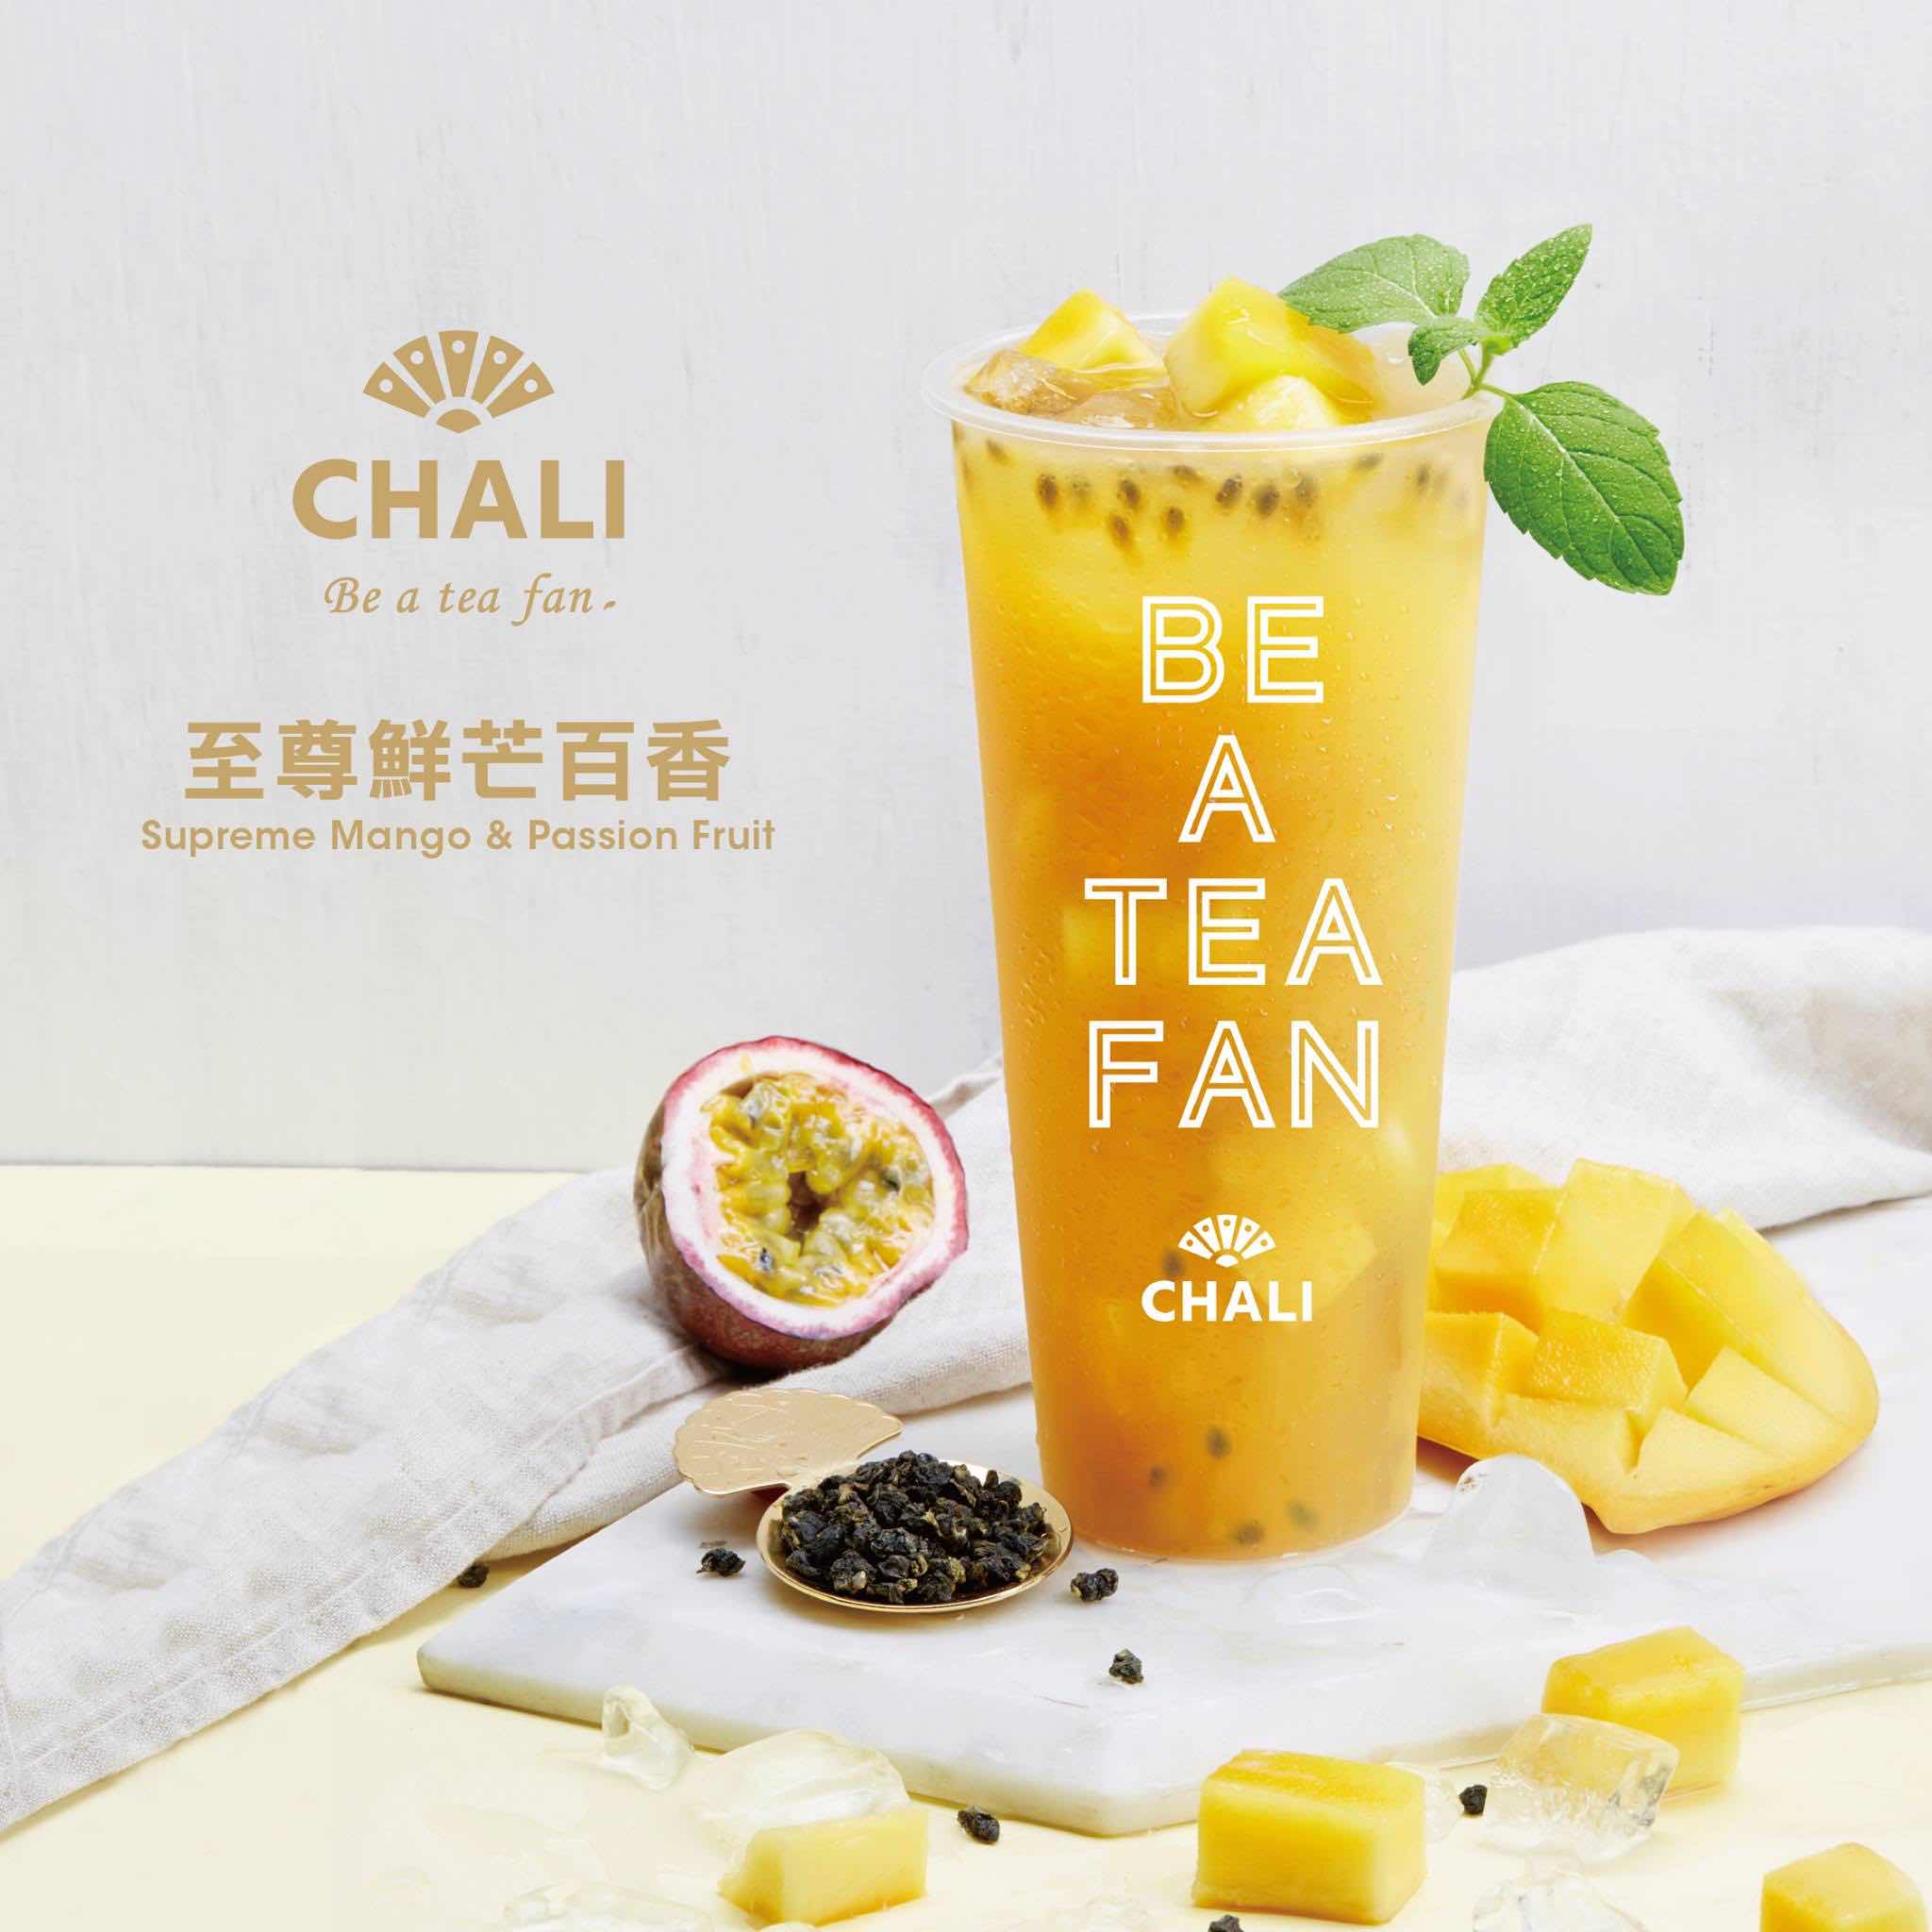 茶里 CHALI的特許經營香港區加盟店項目8